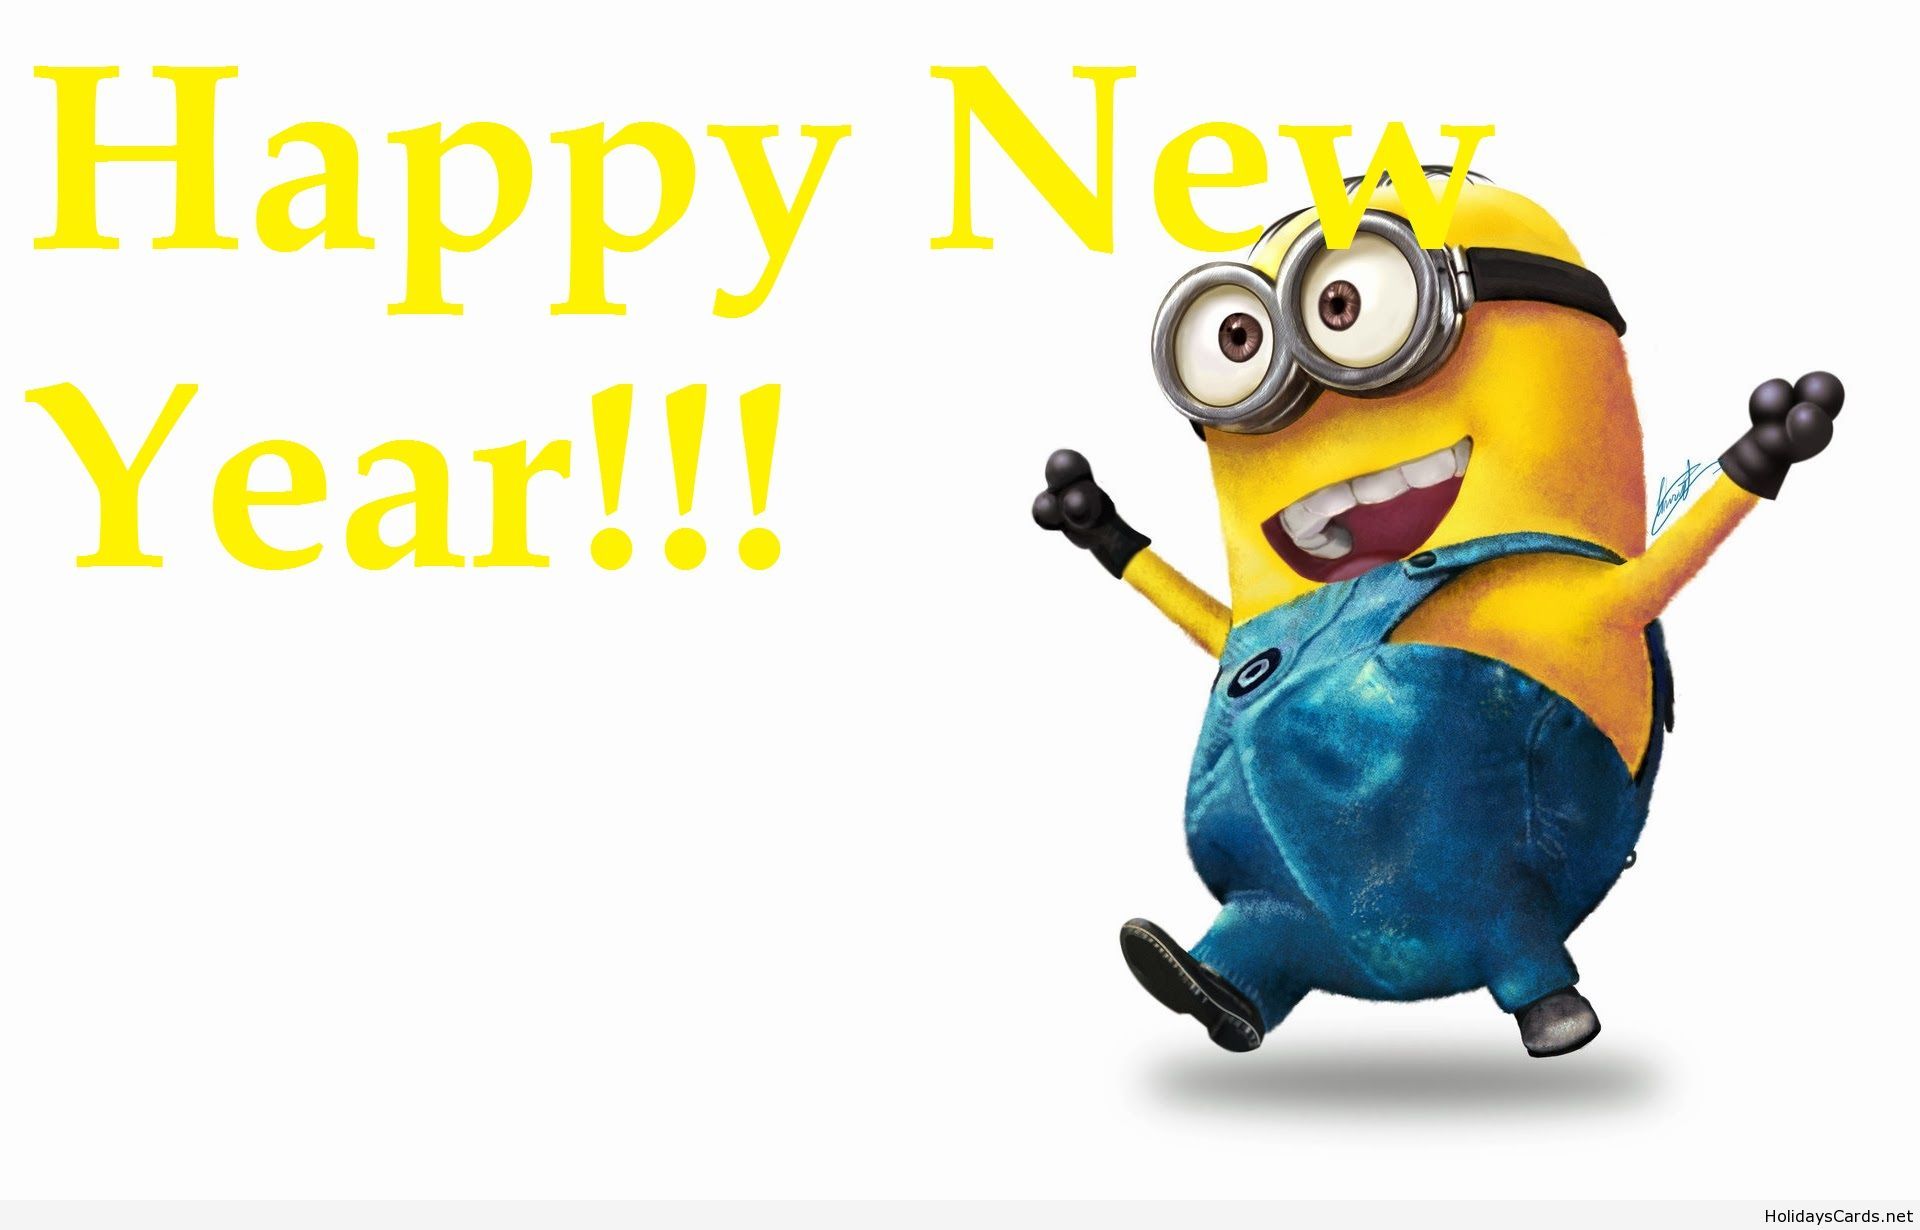 Happy New Year Funny, Happy Minion.